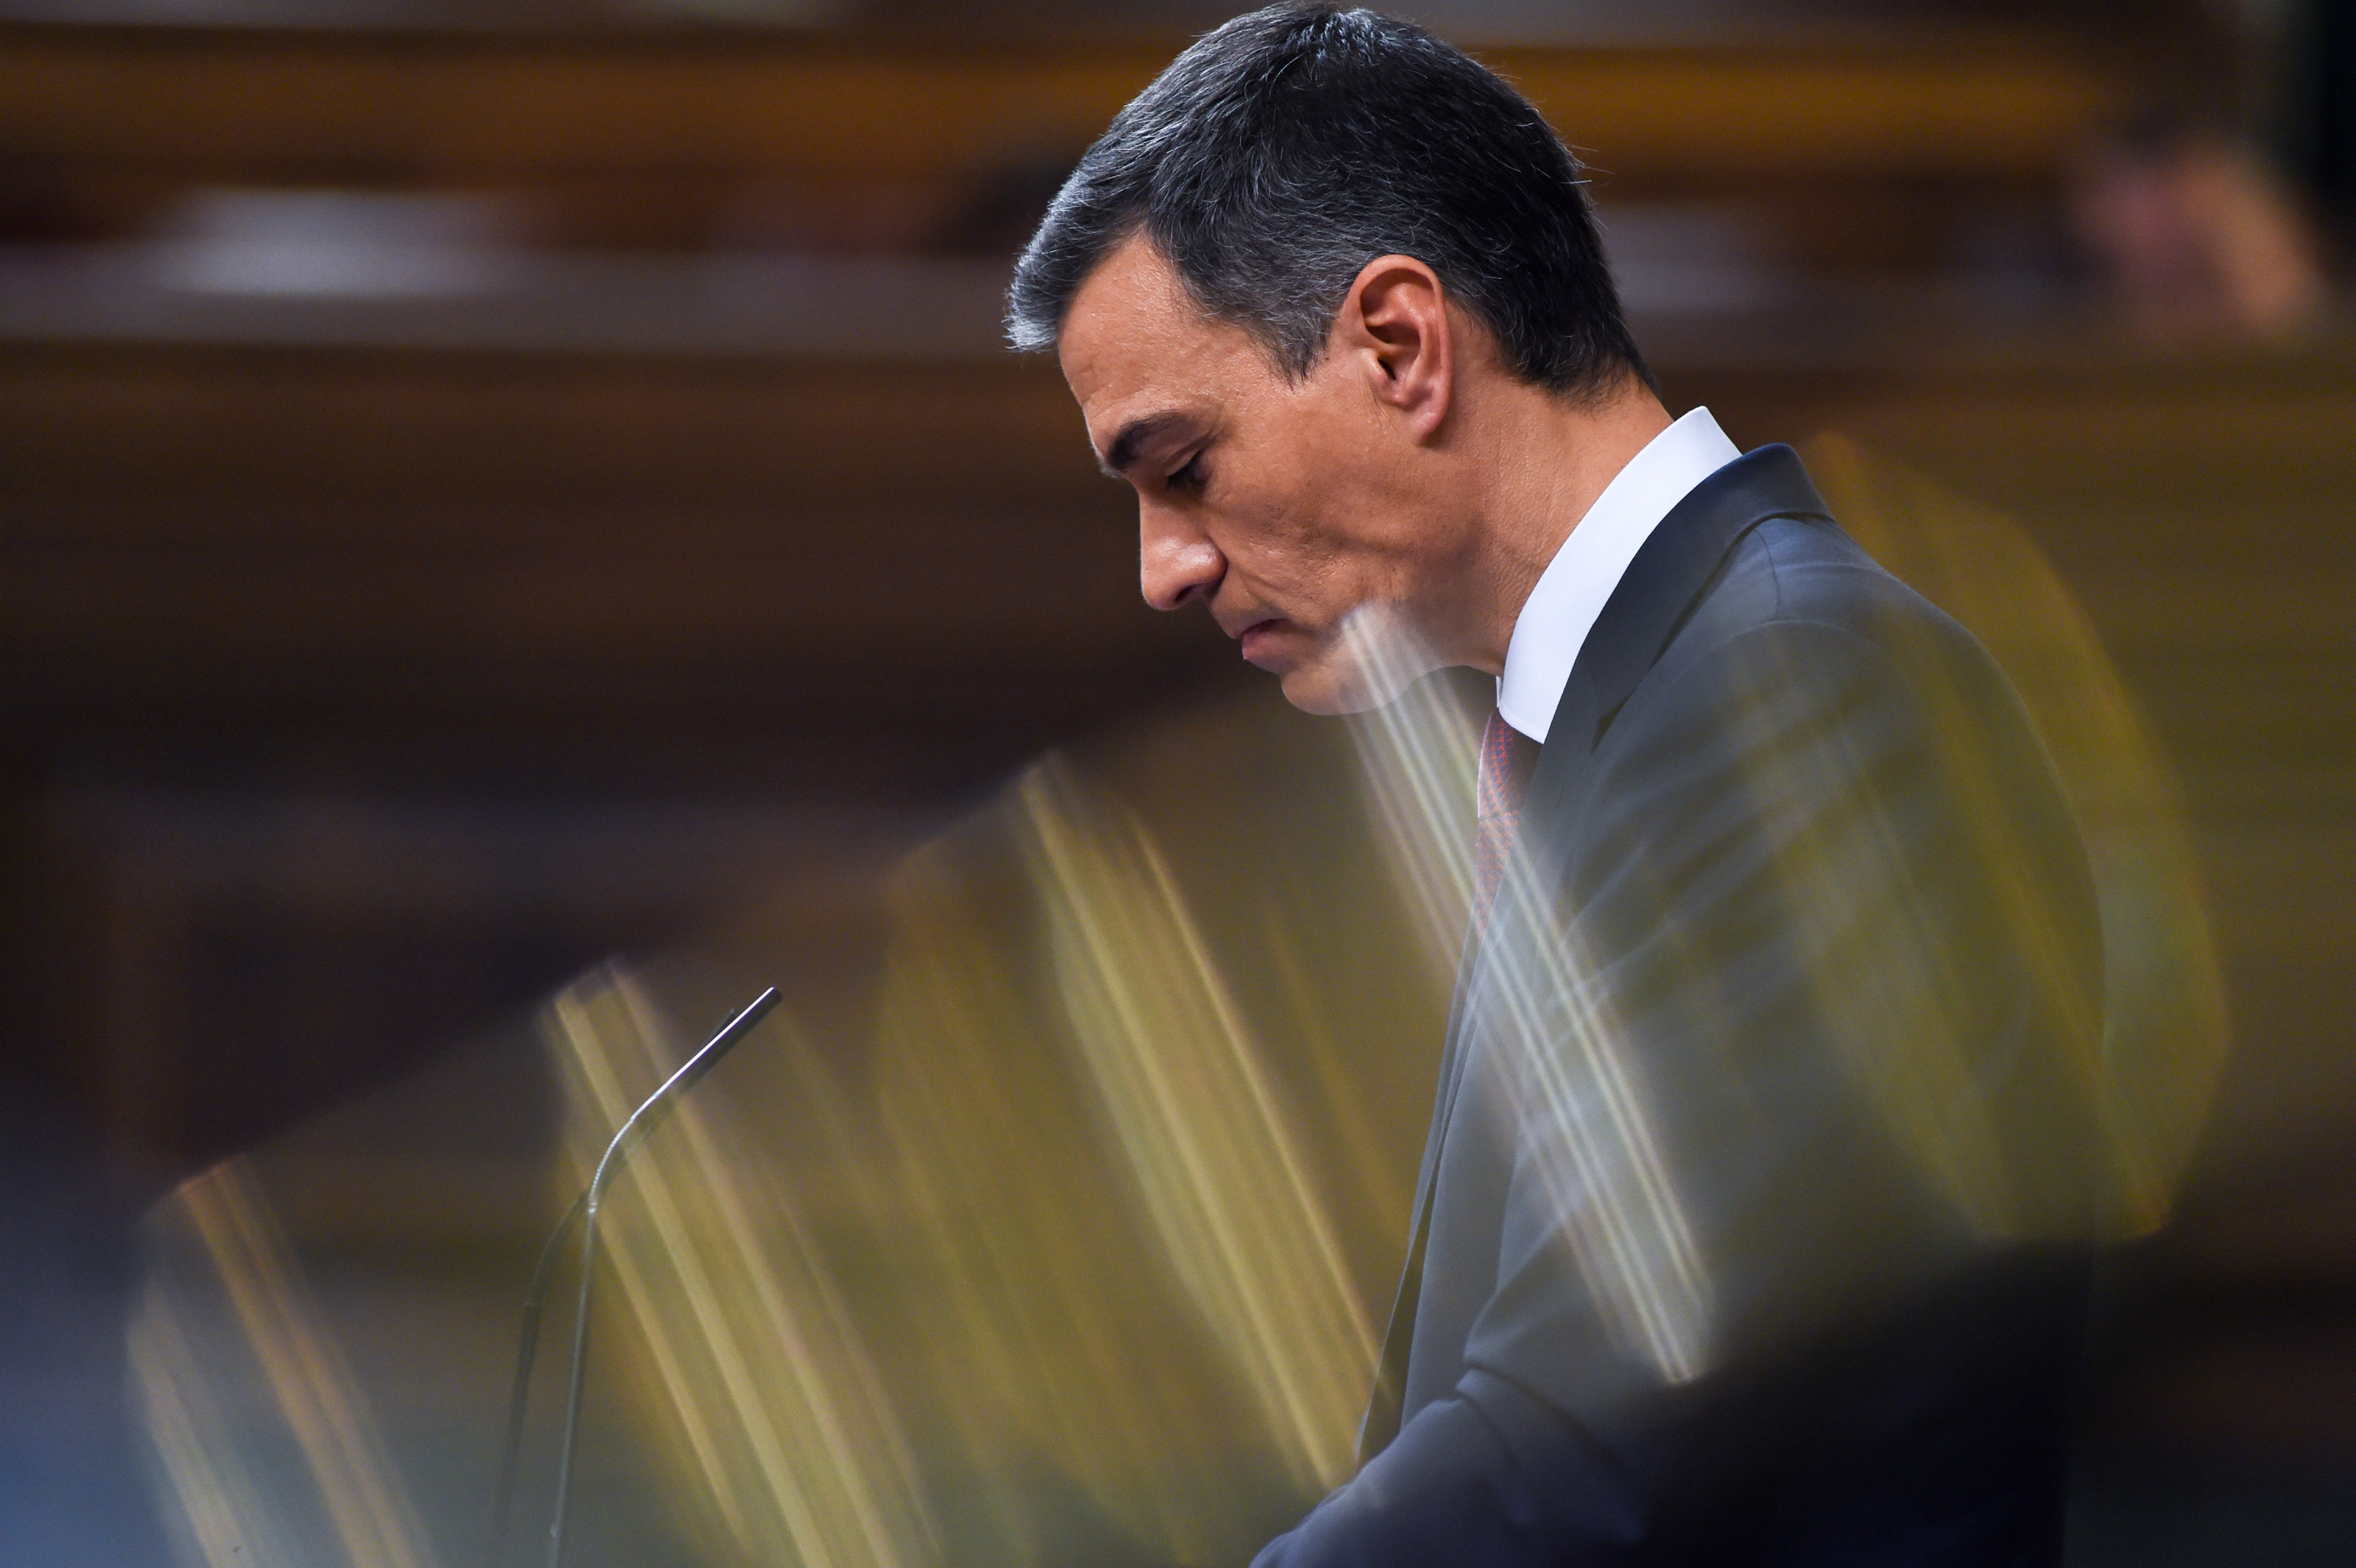 El 22,4% de los votantes del PSOE cambiarían su voto después de la investidura de Sánchez